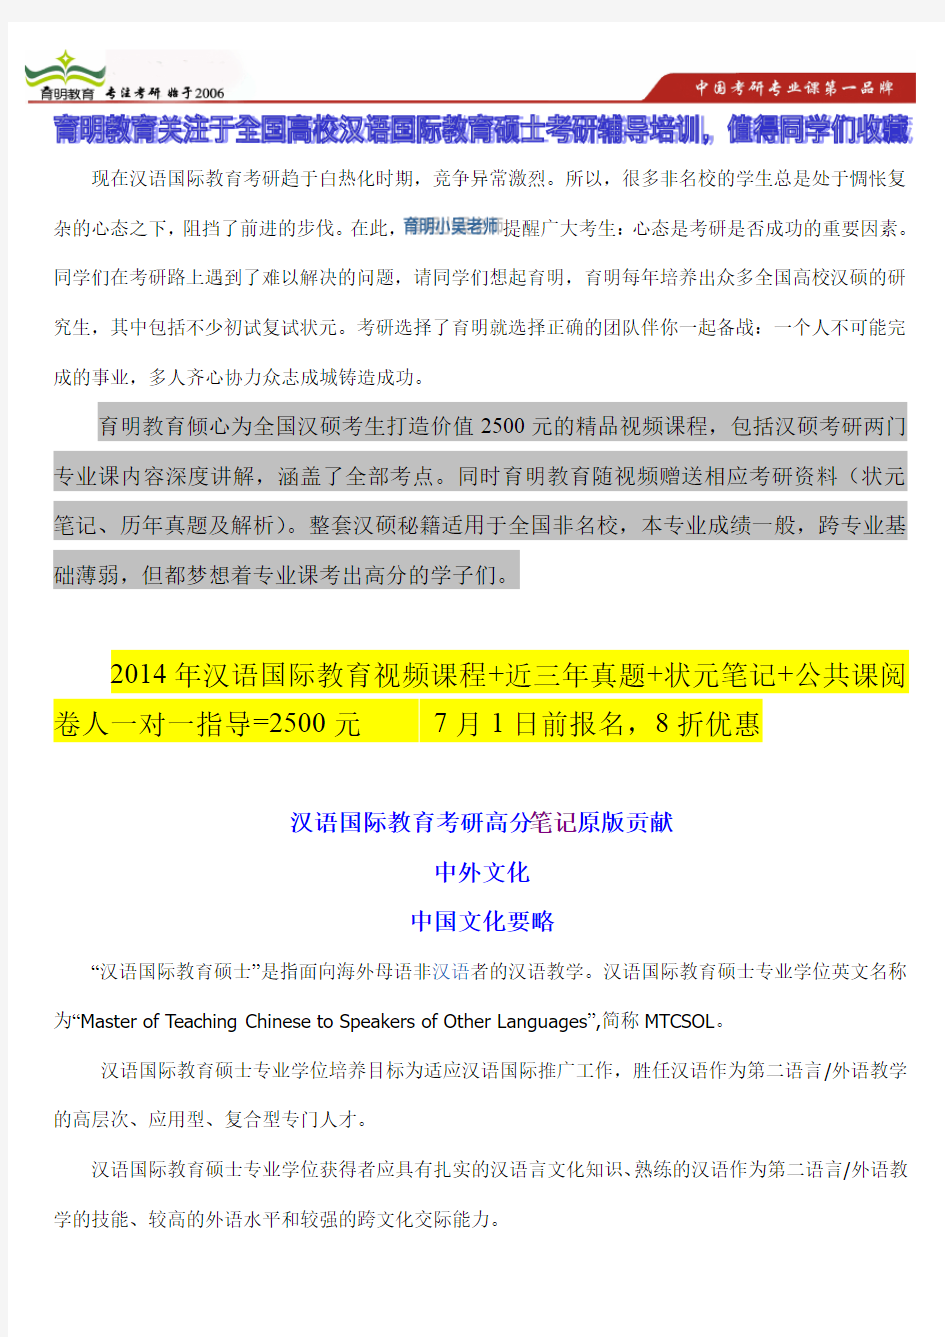 2013年江西师范大学汉语国际教育考研状元笔记、复习方案、高分秘籍、考研信息独家报道